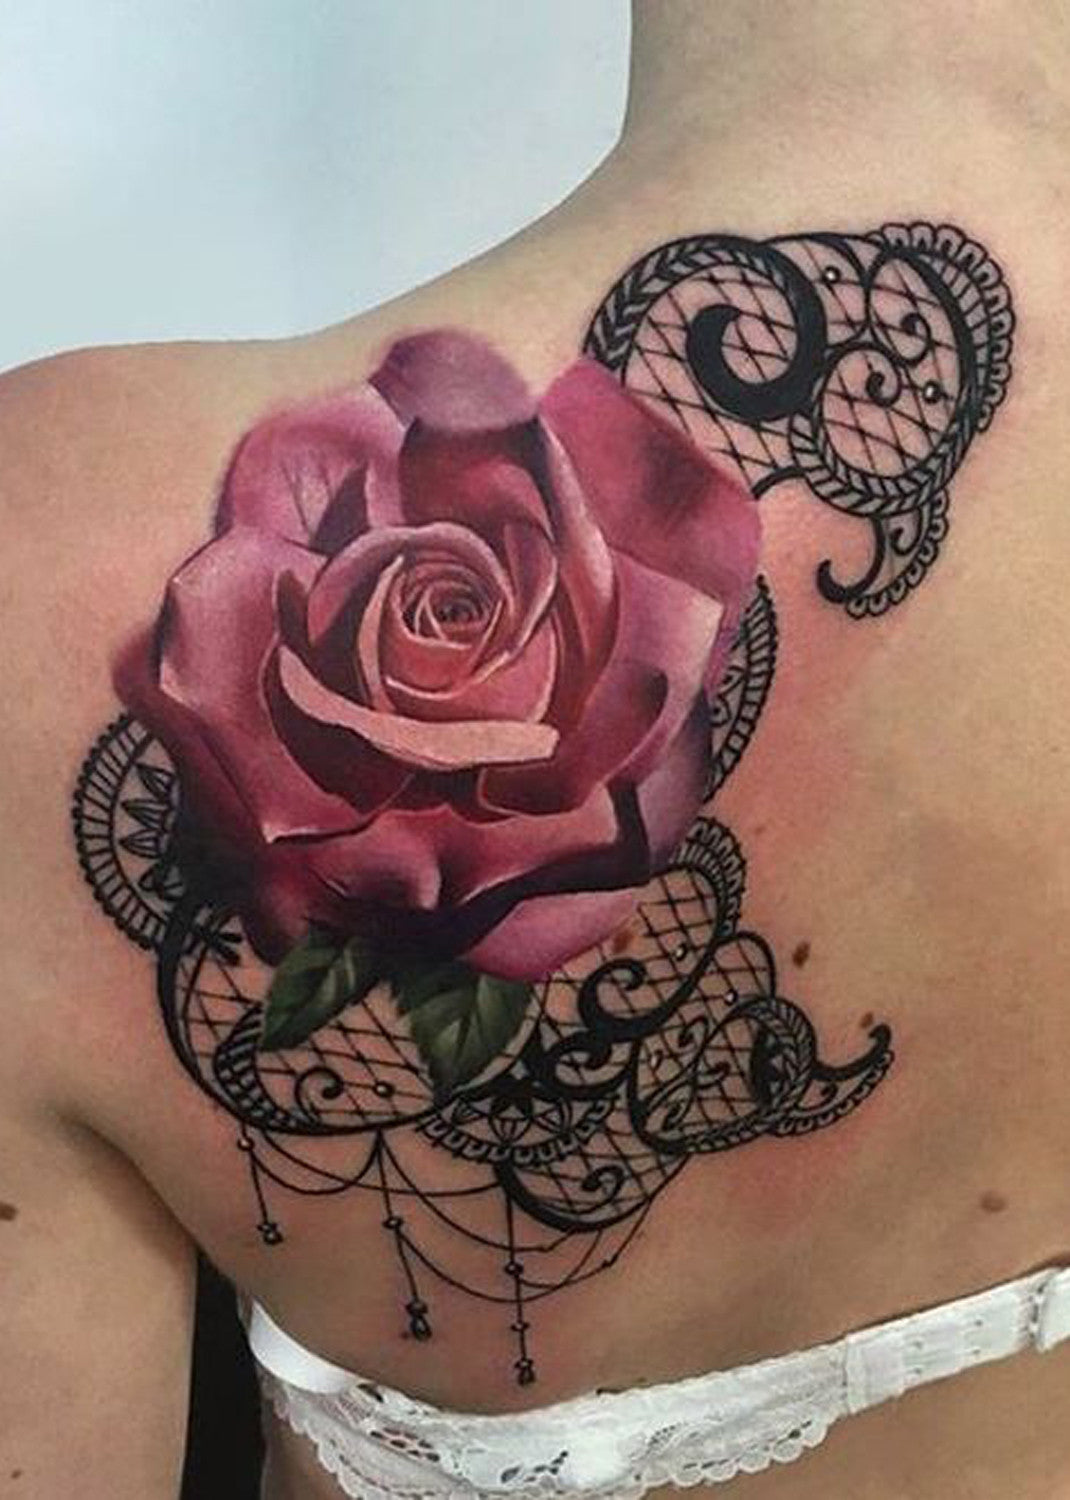 Pink Rose Shoulder Tattoo Ideas - Black Lace Shoulder Tat at MyBodiArt.com 